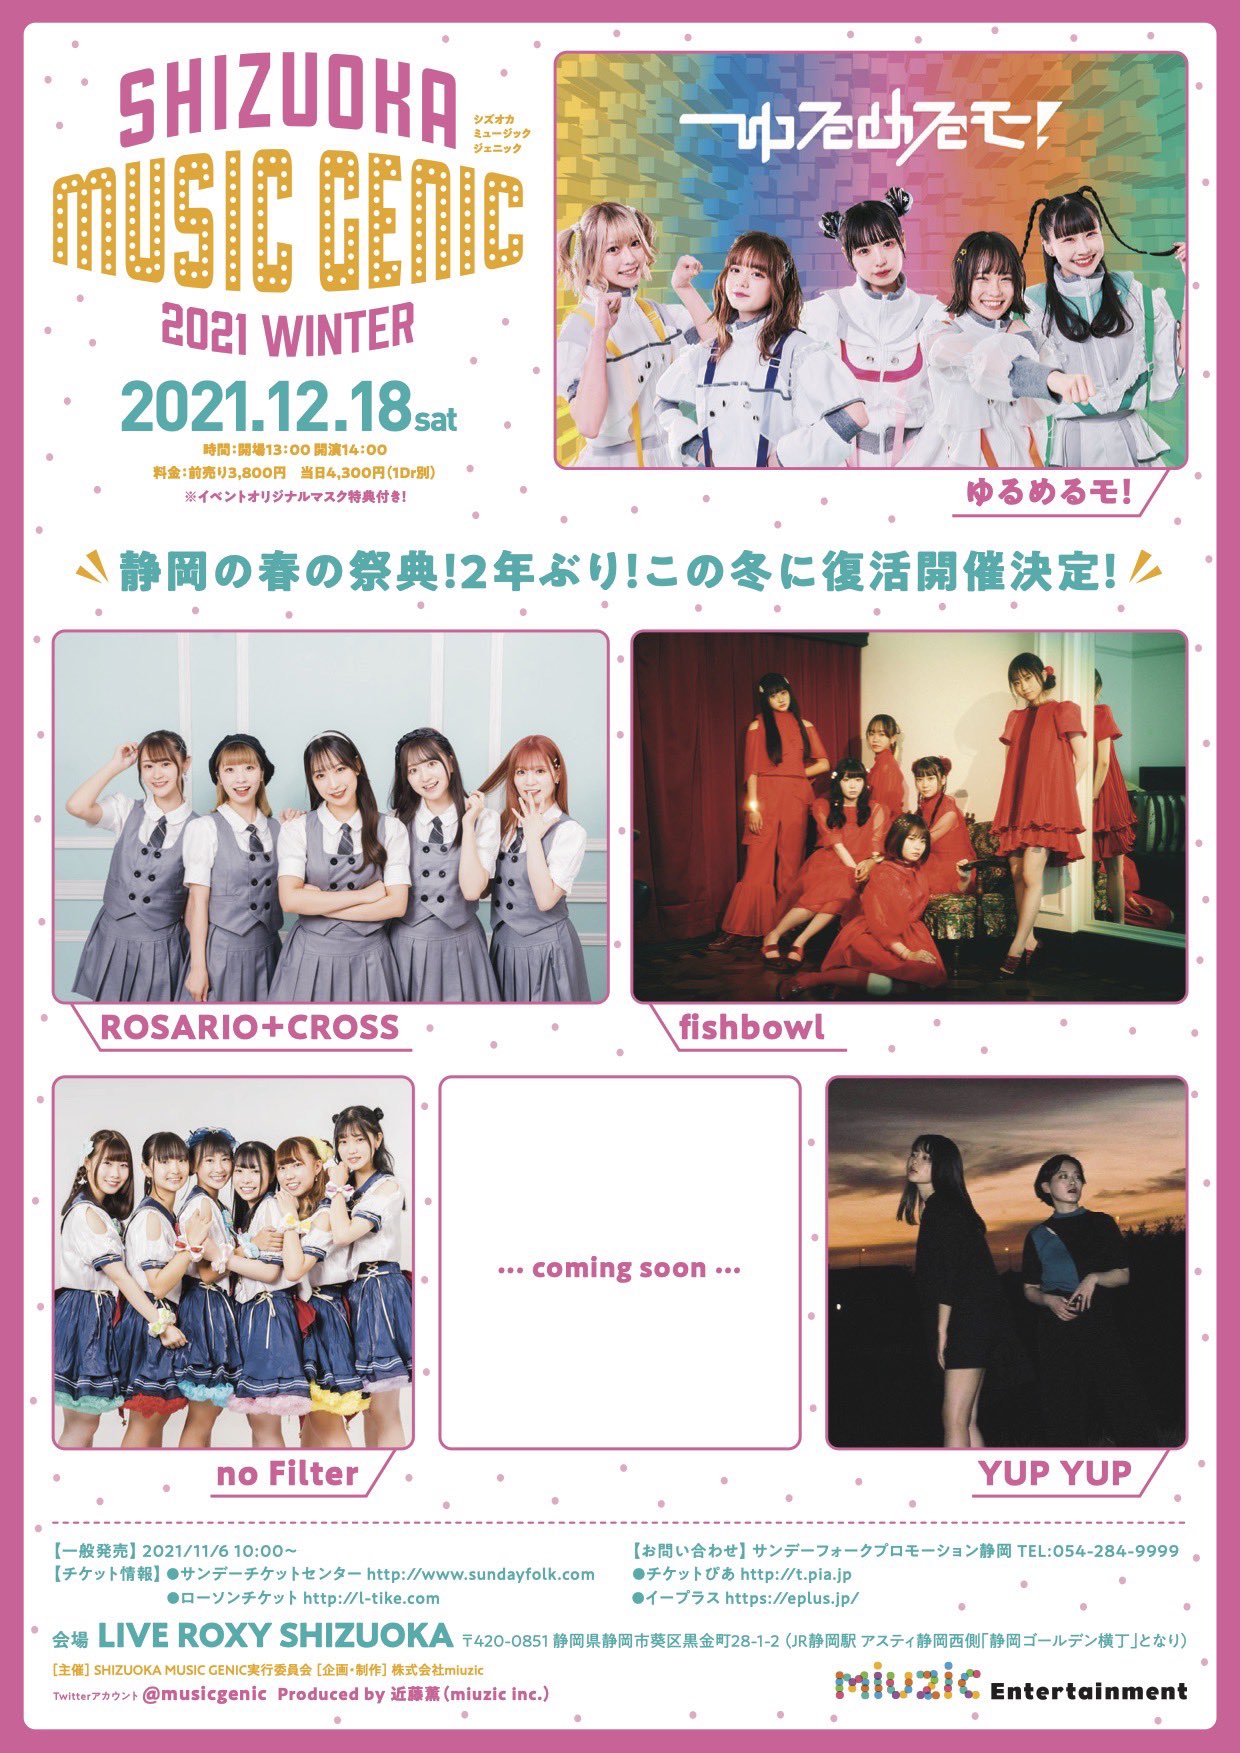 SHIZUOKA MUSIC GENIC 2021 Winter